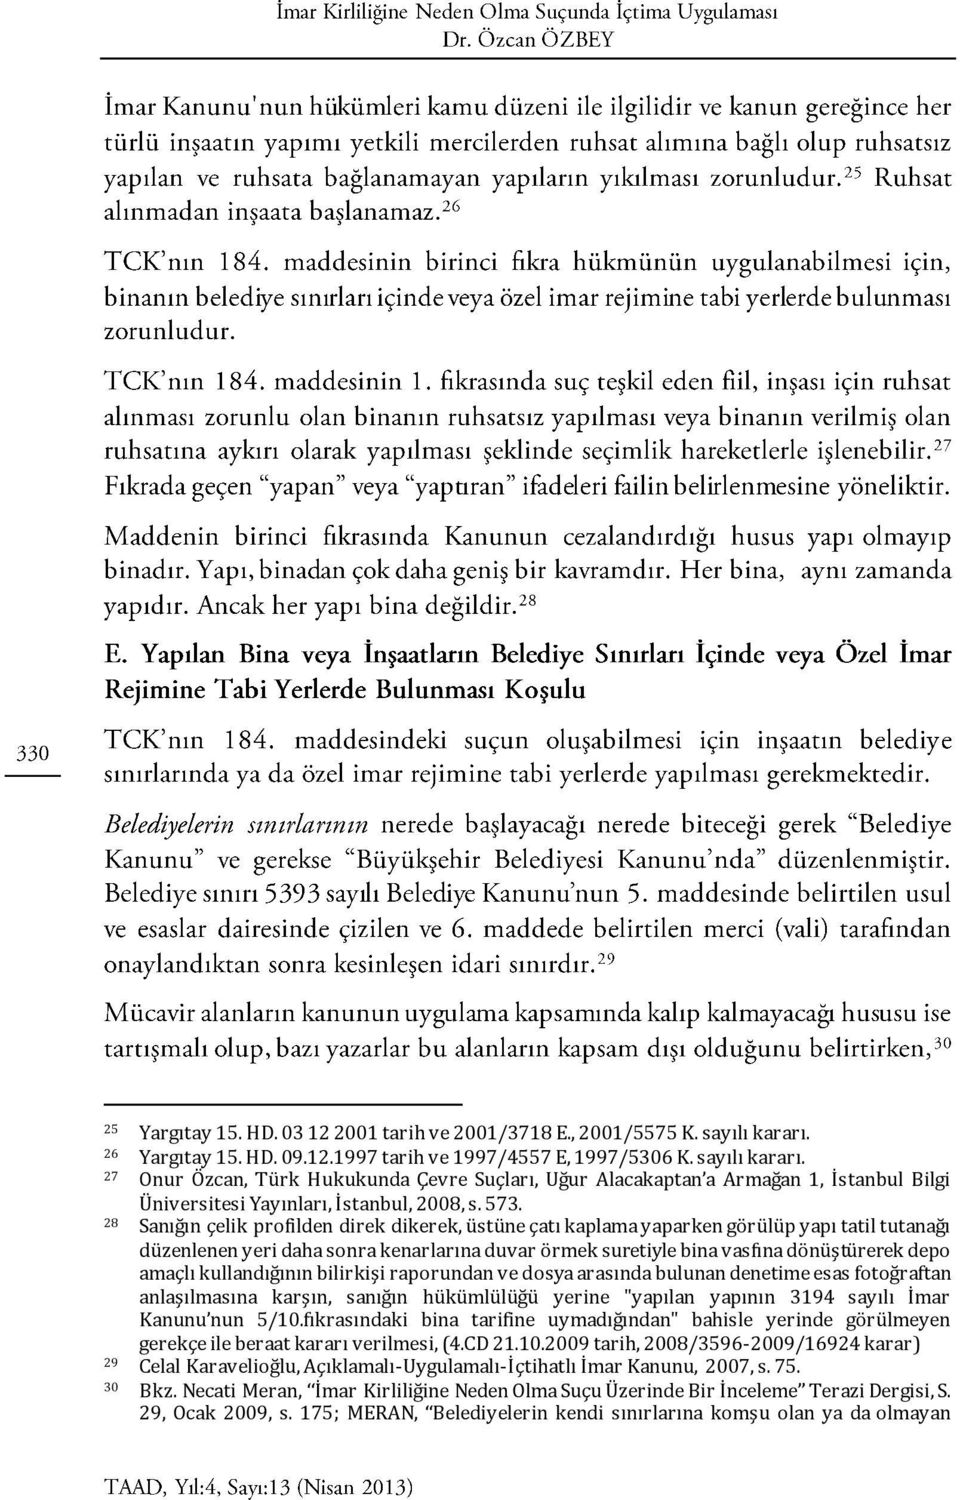 27 Onur Özcan, Türk Hukukunda Çevre Suçları, Uğur Alacakaptan a Armağan 1, İstanbul Bilgi Üniversitesi Yayınları, İstanbul, 2008, s. 573.